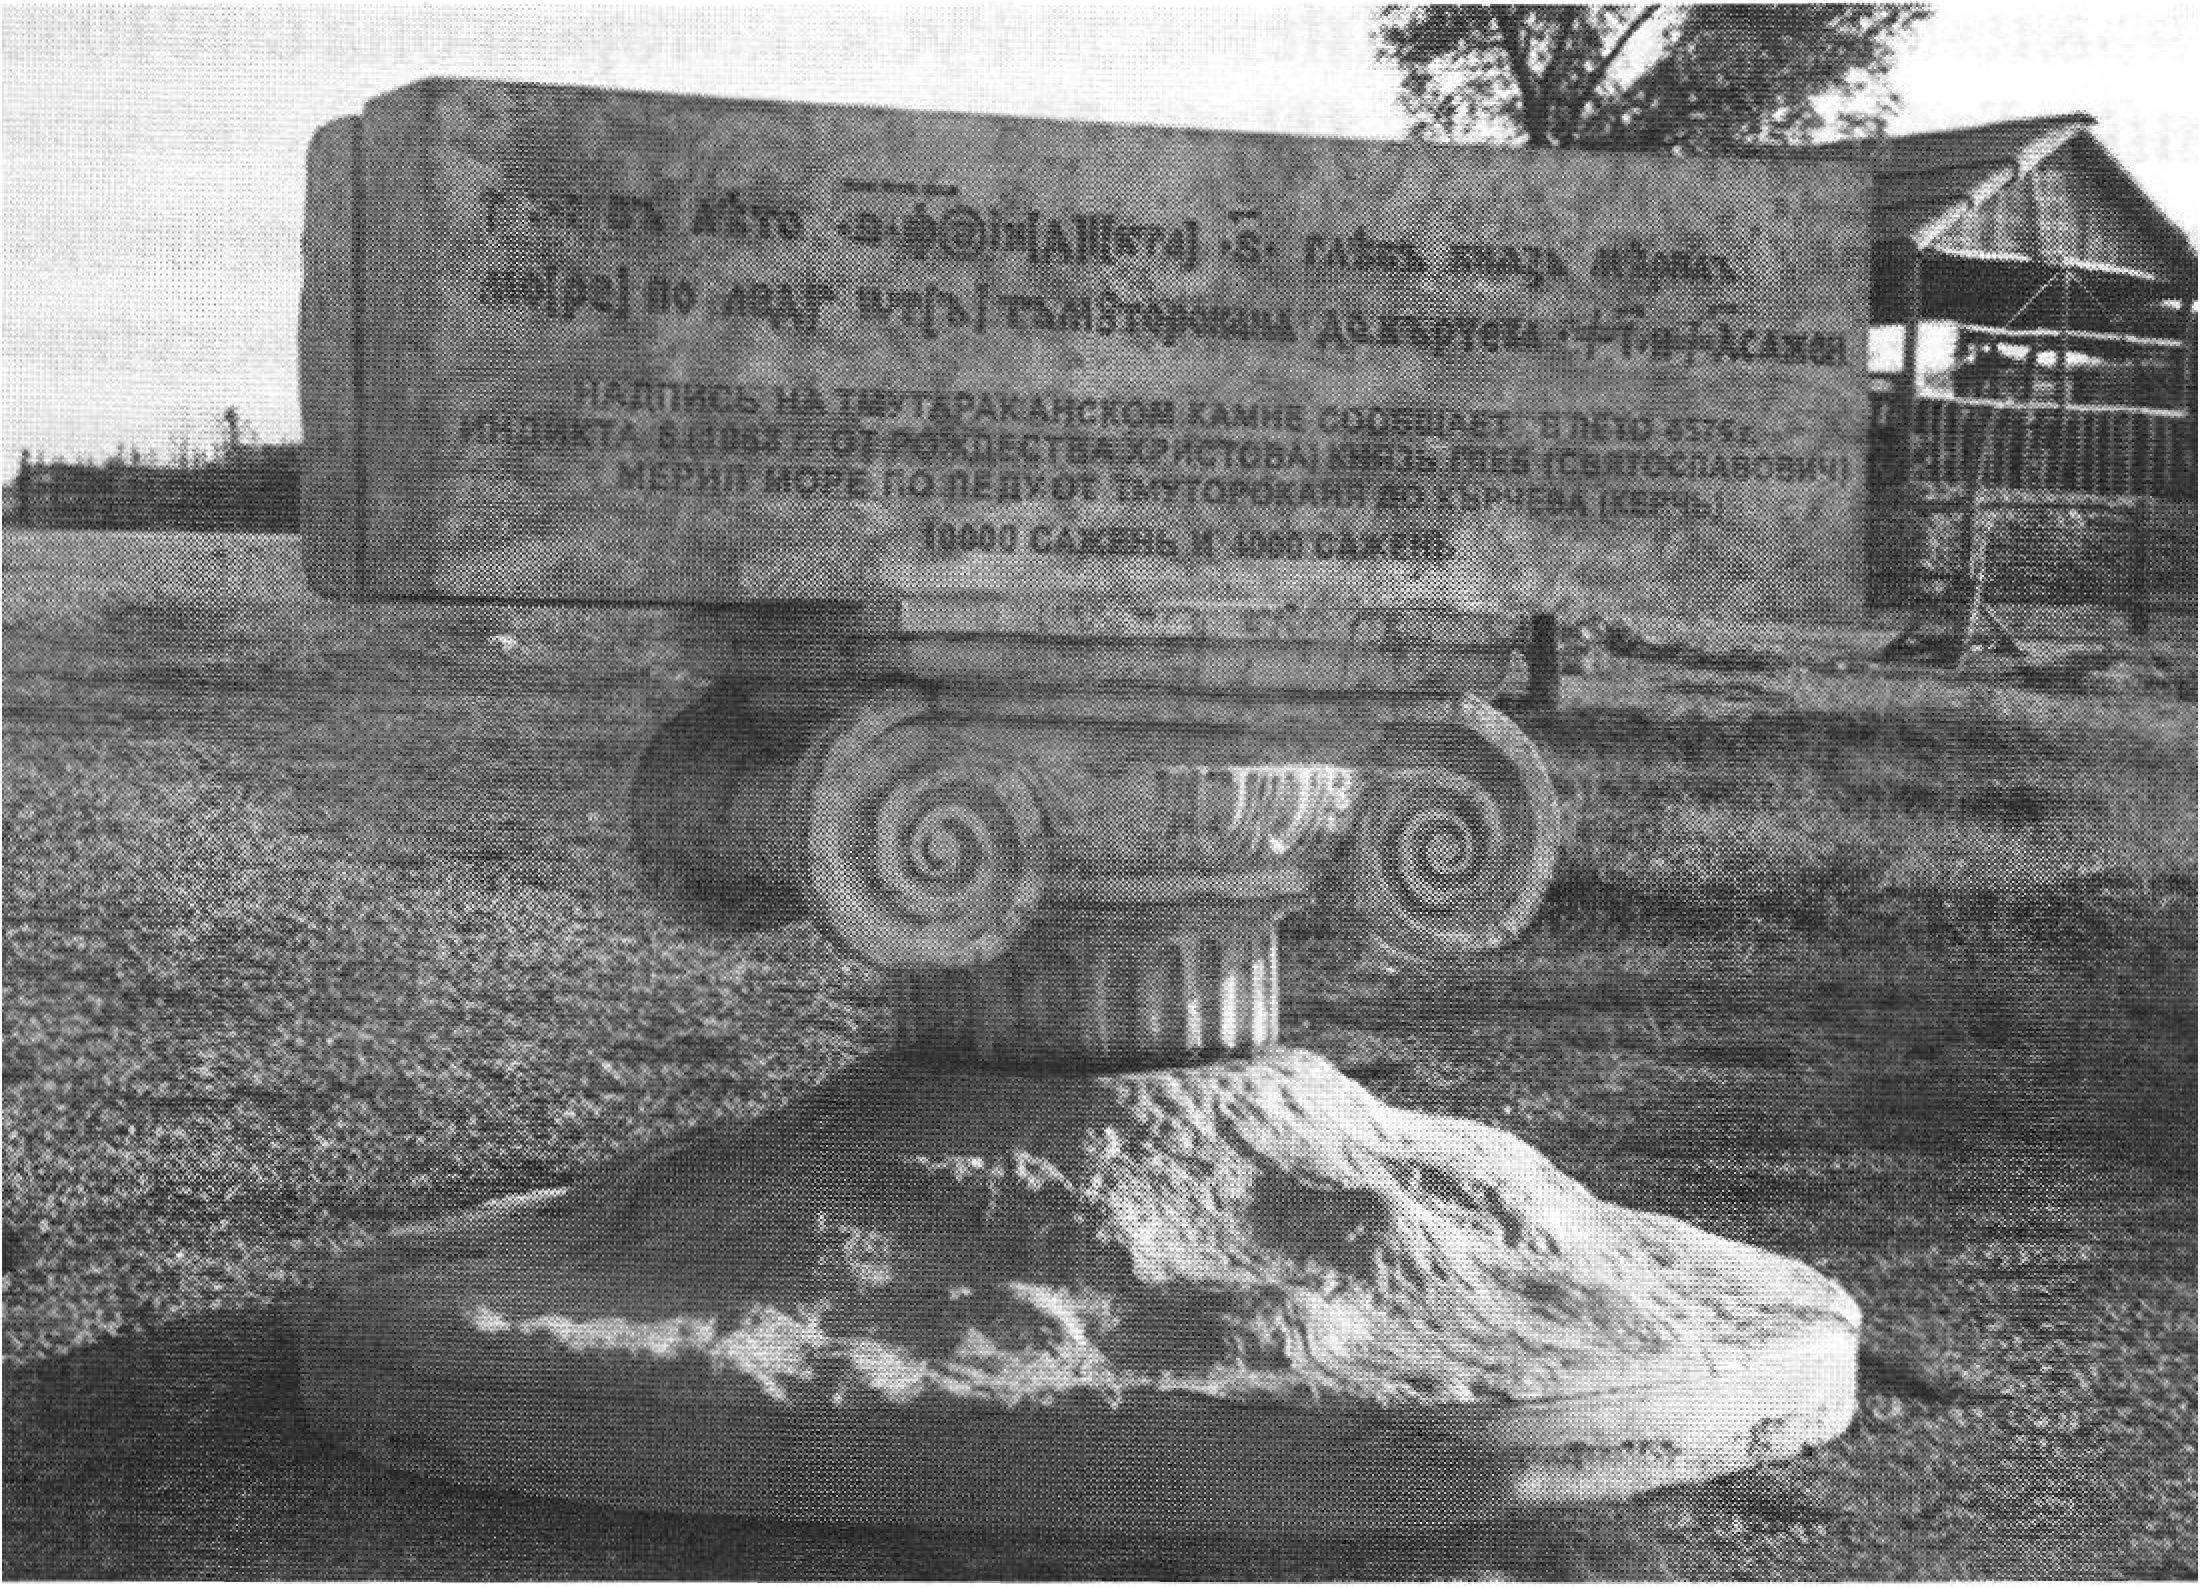 Памятный знак с текстом Тмутороканского камня, установленный на Таманском полуострове